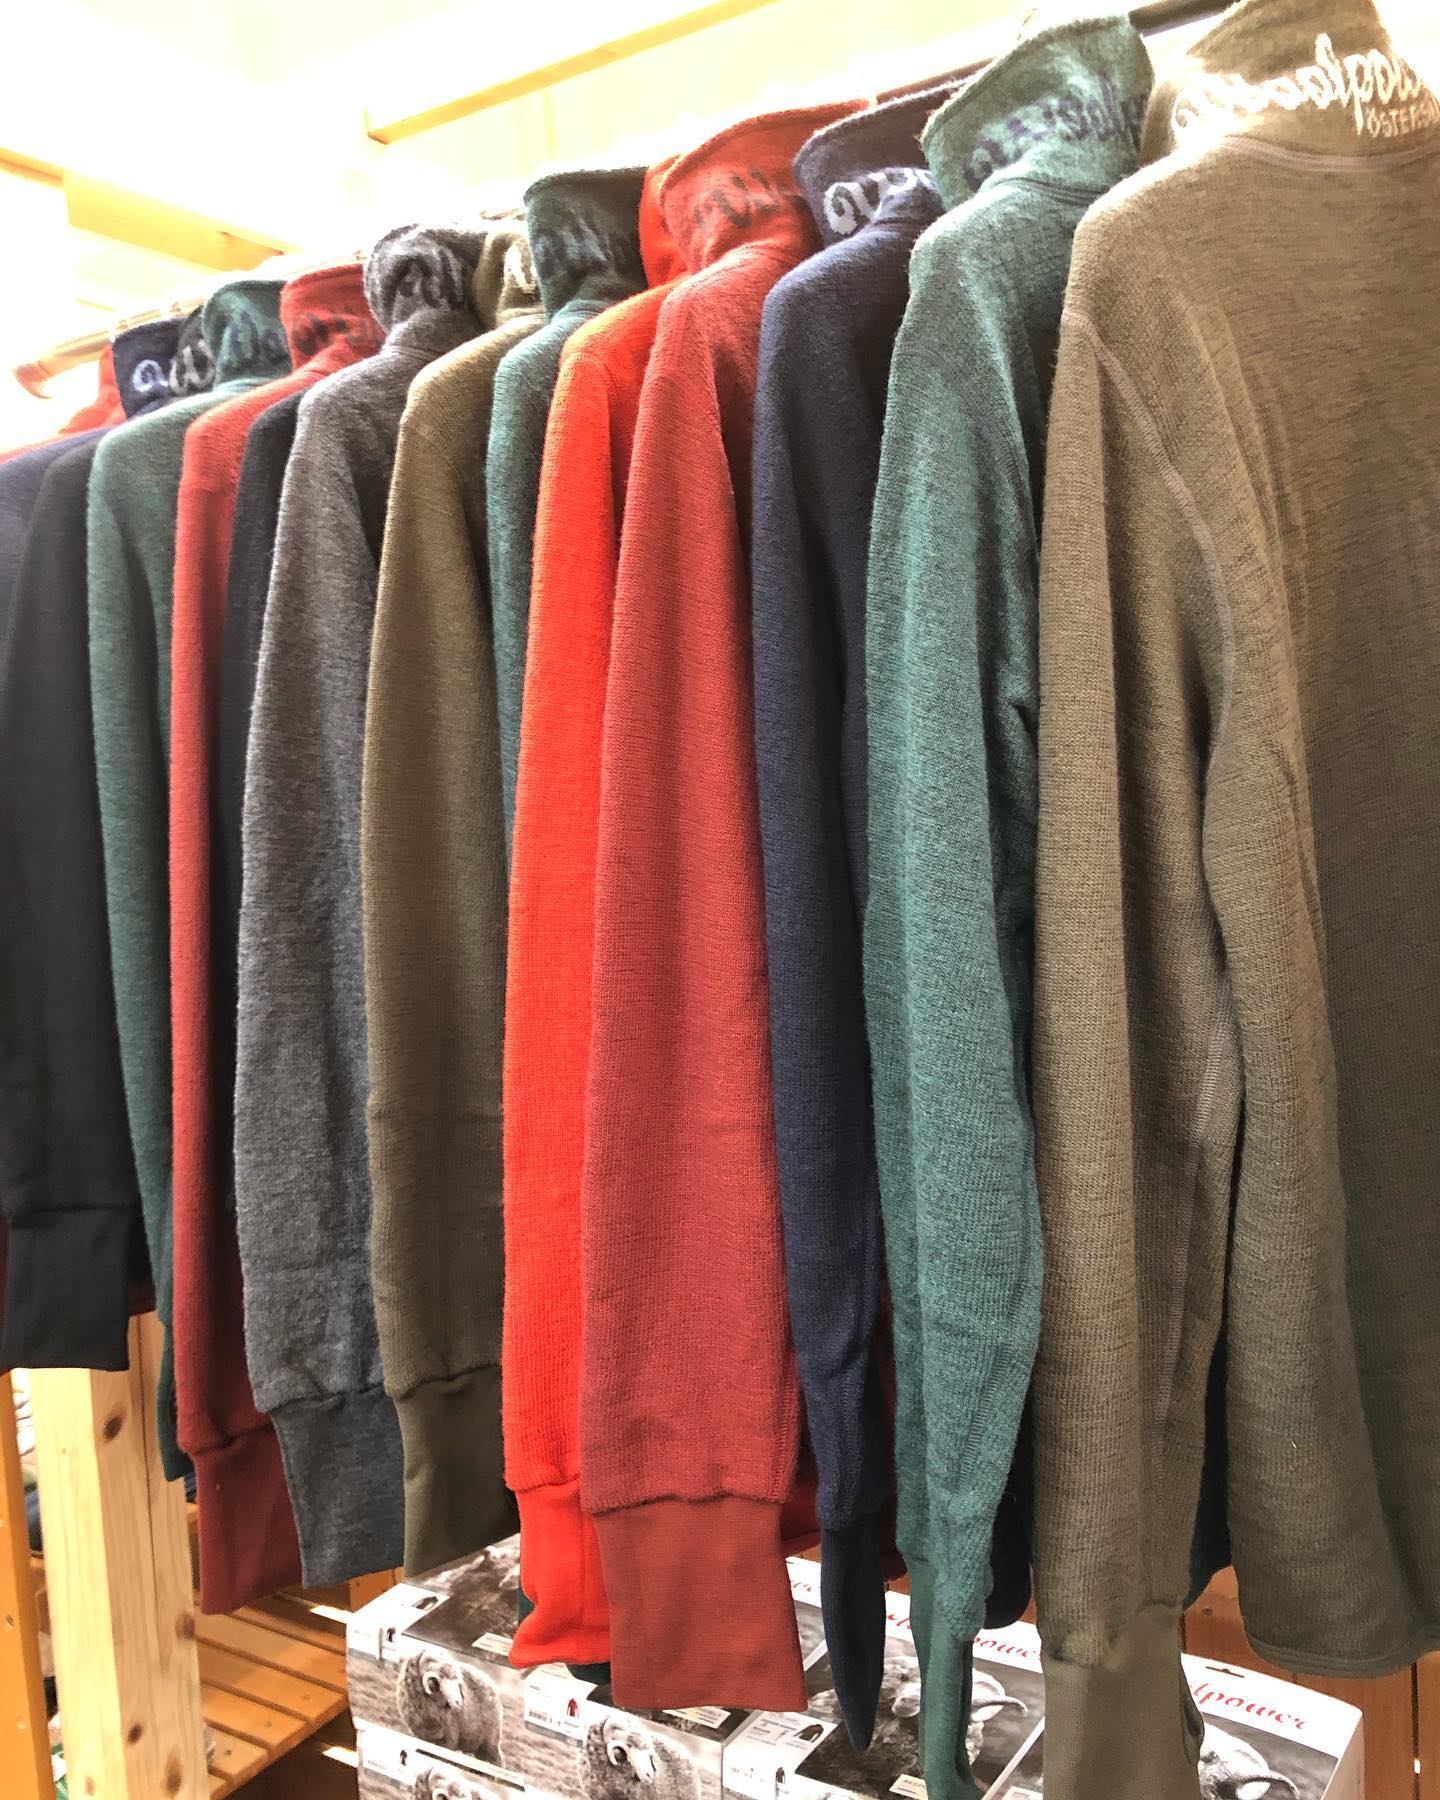 スウェーデン🇸🇪北部エステルスンド製のWoolpower〜1人の職人が、最初のステッチから最後のステッチまで縫製を担当。縫製担当者の名前がウェアに刻まれています。ウールパワーブランドの品質の証〜梅雨時、寒暖差がある八ヶ岳の麓で大活躍間違いなしのウールのミドルレイヤー！！！#woolpower #スウェーデン #ハイキング #アウトドア #キャンプ #普段使い #ウール #ミドルレイヤー #フィールドユース#タウンユース #アウトドアアパレル #アパレル #八ヶ岳の薪ストーブ専門店 #ストーブハウス原村 #薪ストーブ#薪ストーブのある暮らし #八ヶ岳 #原村 #富士見 #蓼科